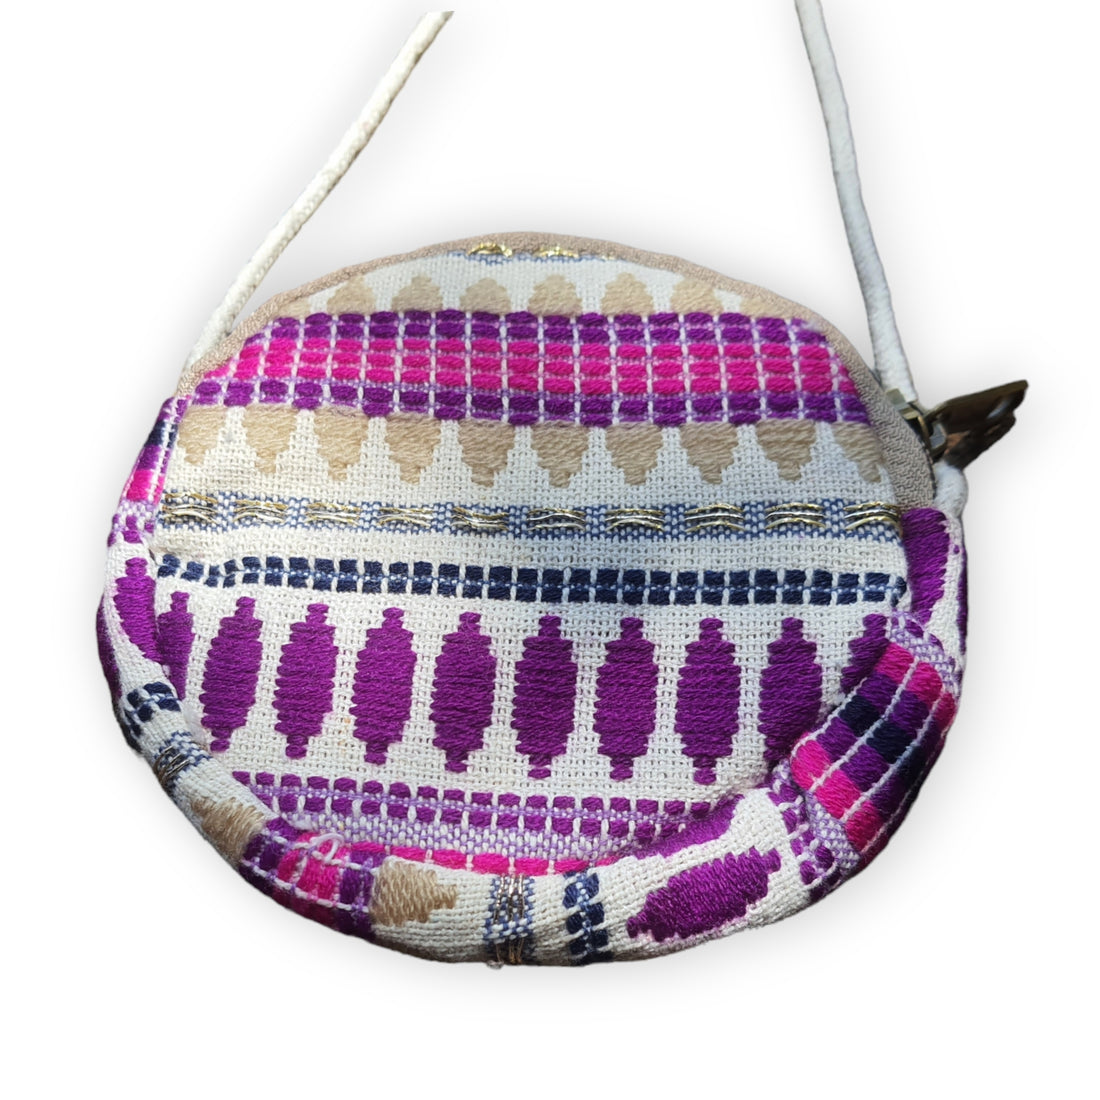 Authentic Himalayan Circular Hemp Bag